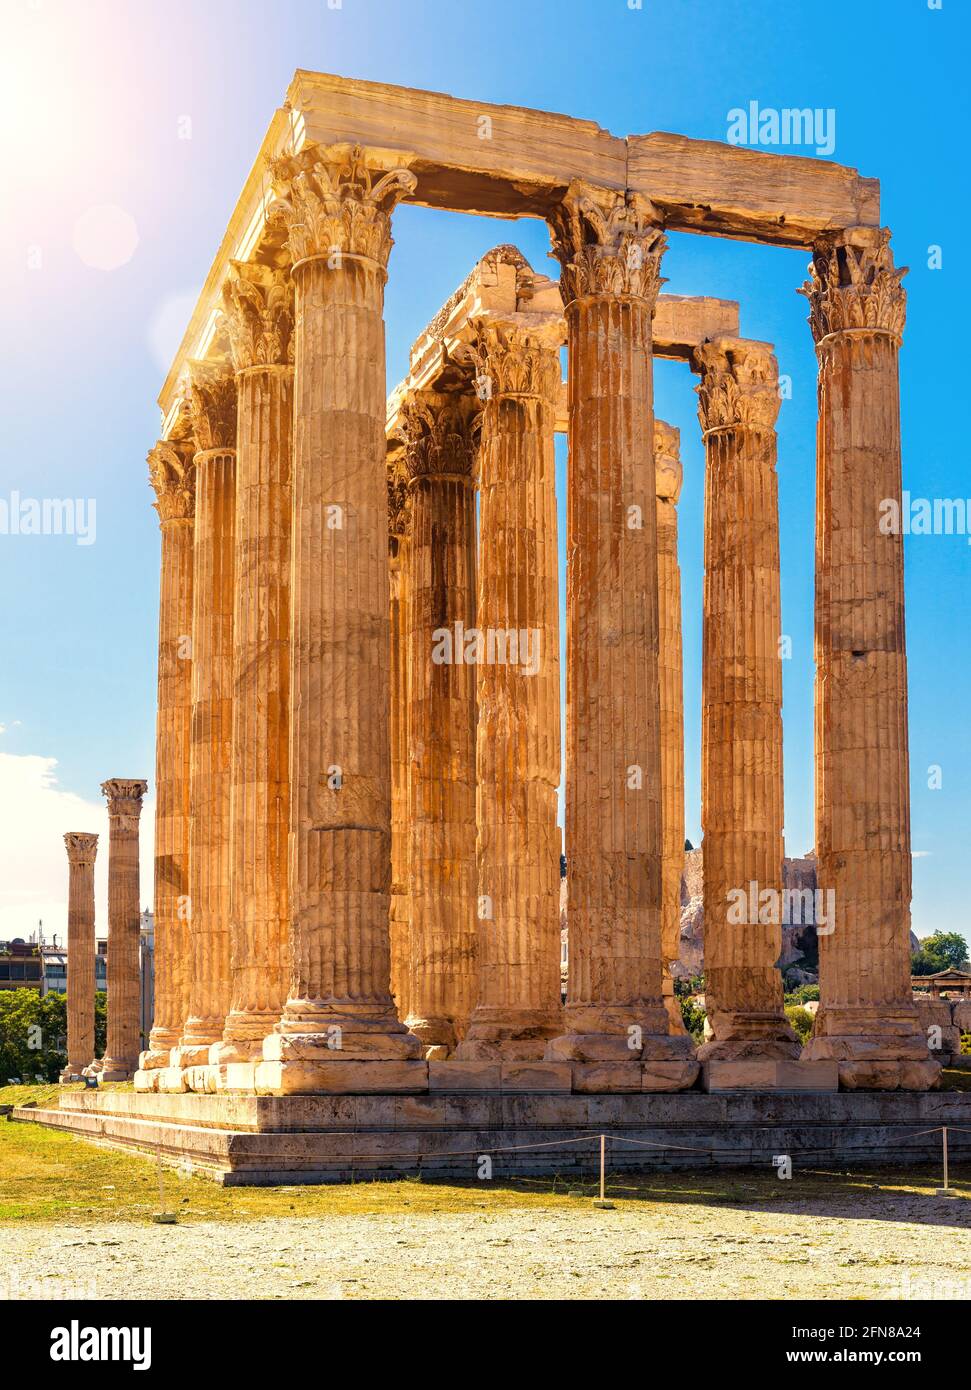 Zeus-Tempel im Sonnenlicht, Athen, Griechenland. Es ist berühmtes Denkmal und Wahrzeichen von Athen. Sonnige Aussicht auf antike griechische Ruinen, große Säulen der klassischen b Stockfoto